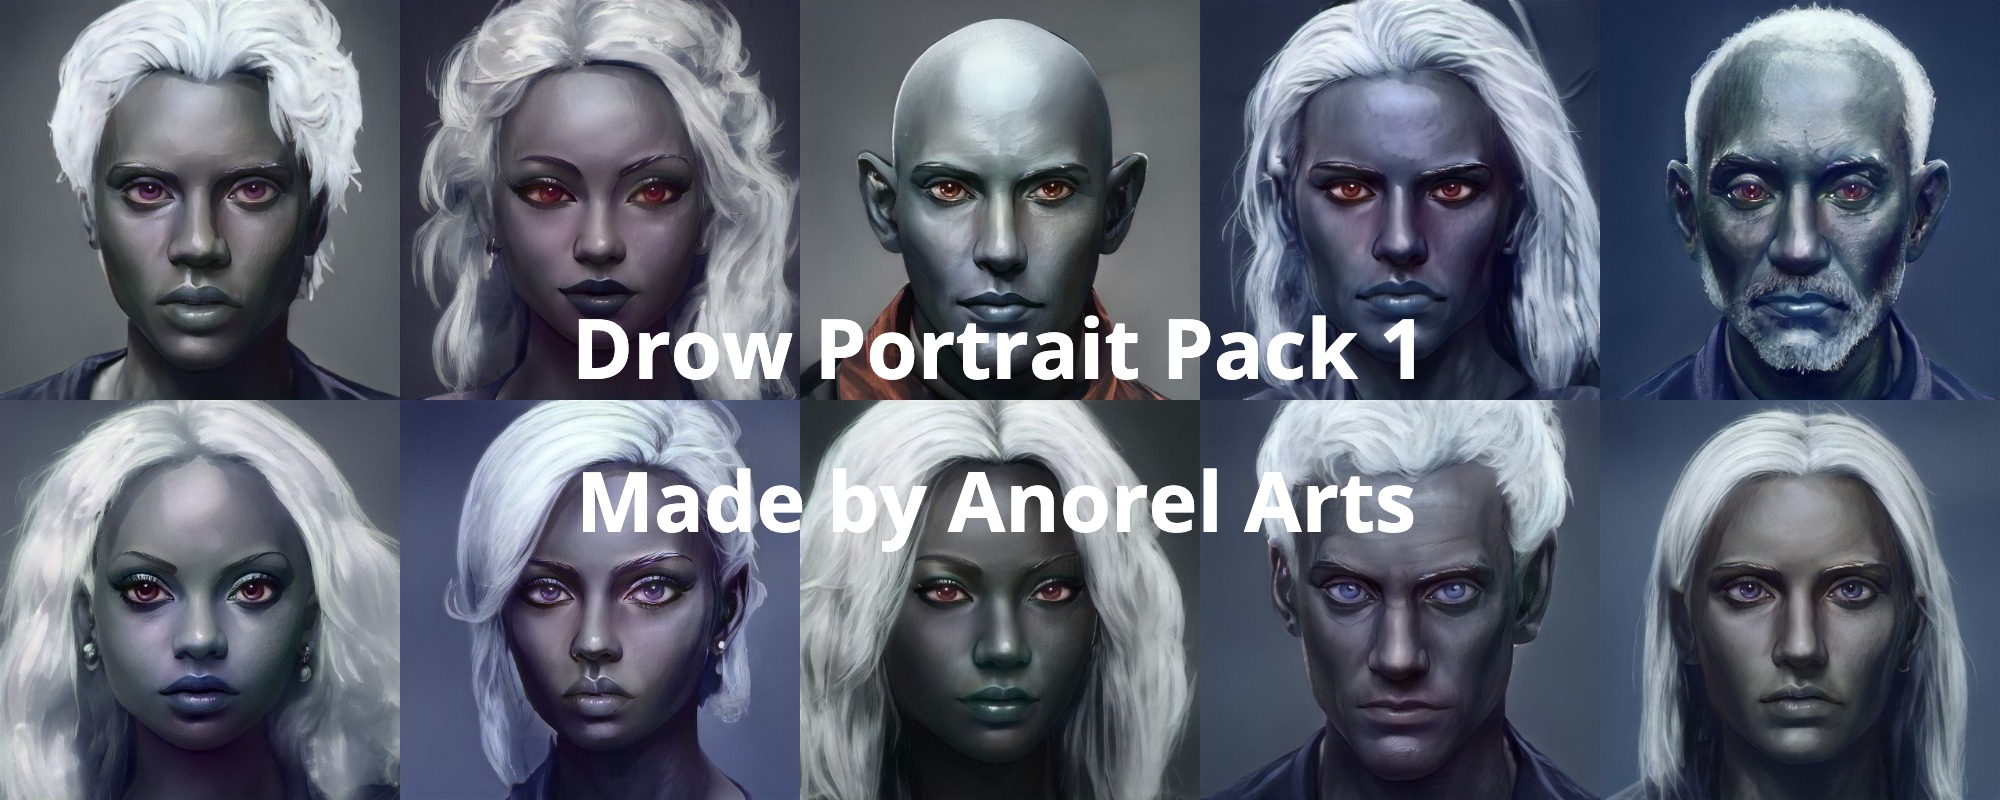 Drow Portrait Pack 1